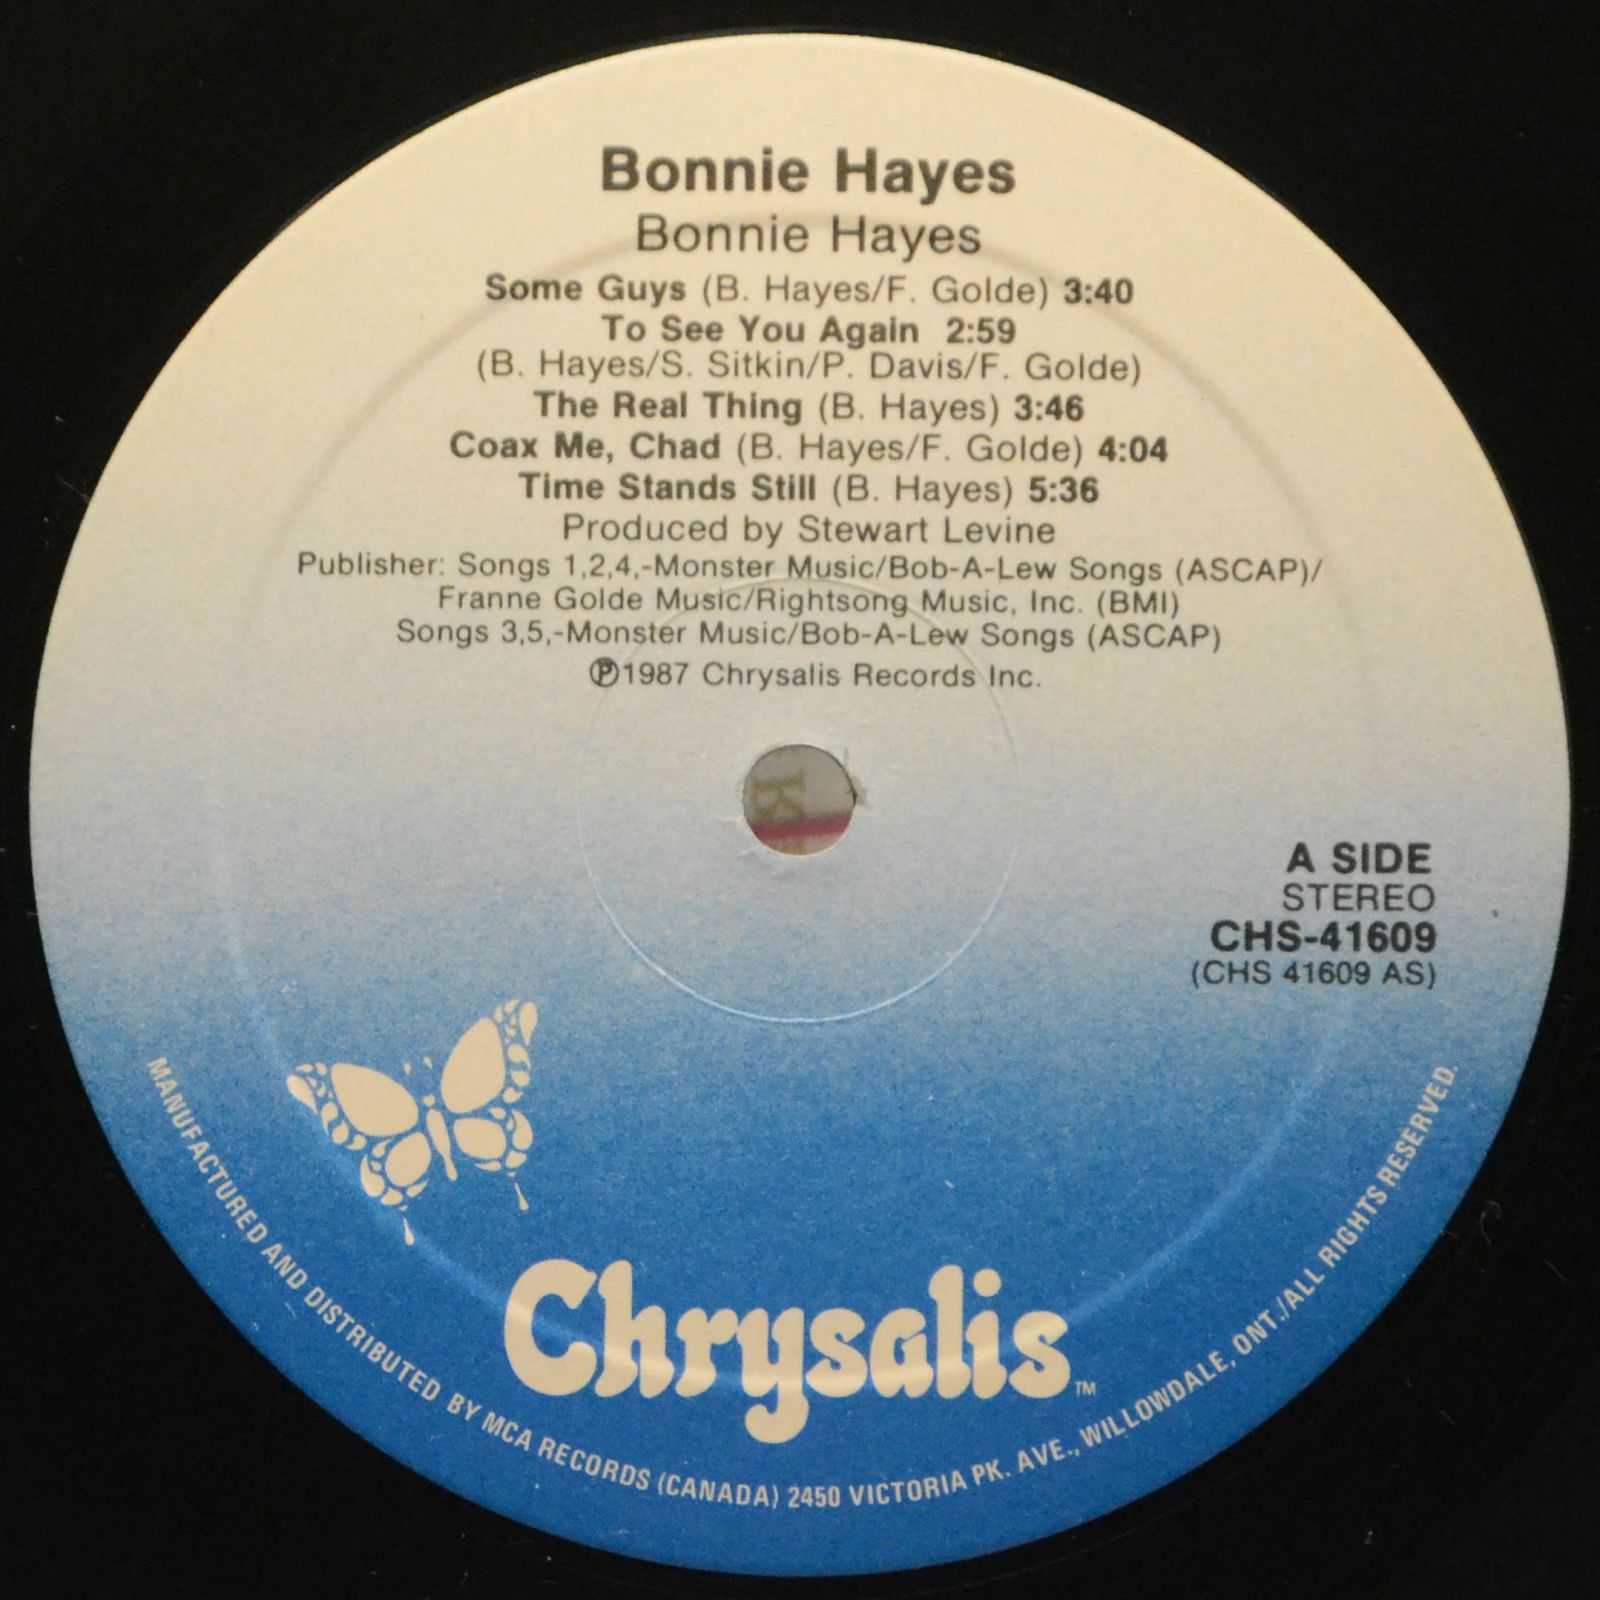 Bonnie Hayes — Bonnie Hayes, 1987